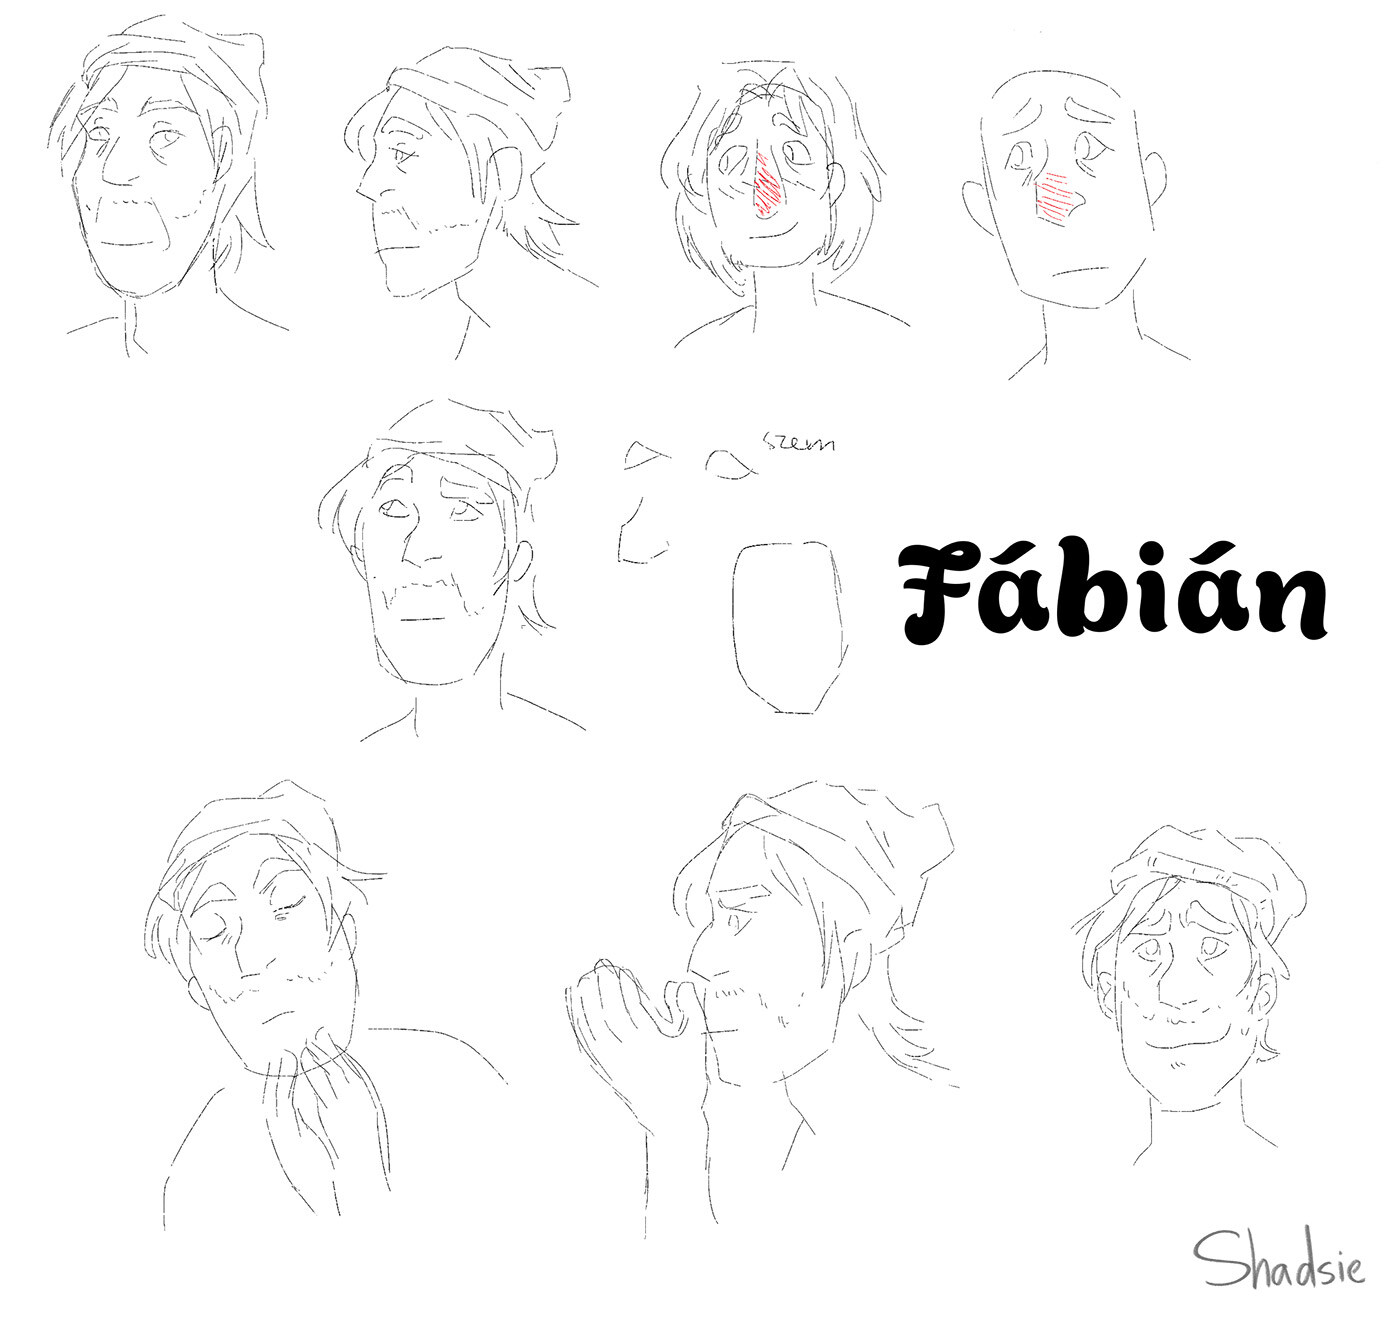 Fábián character plans